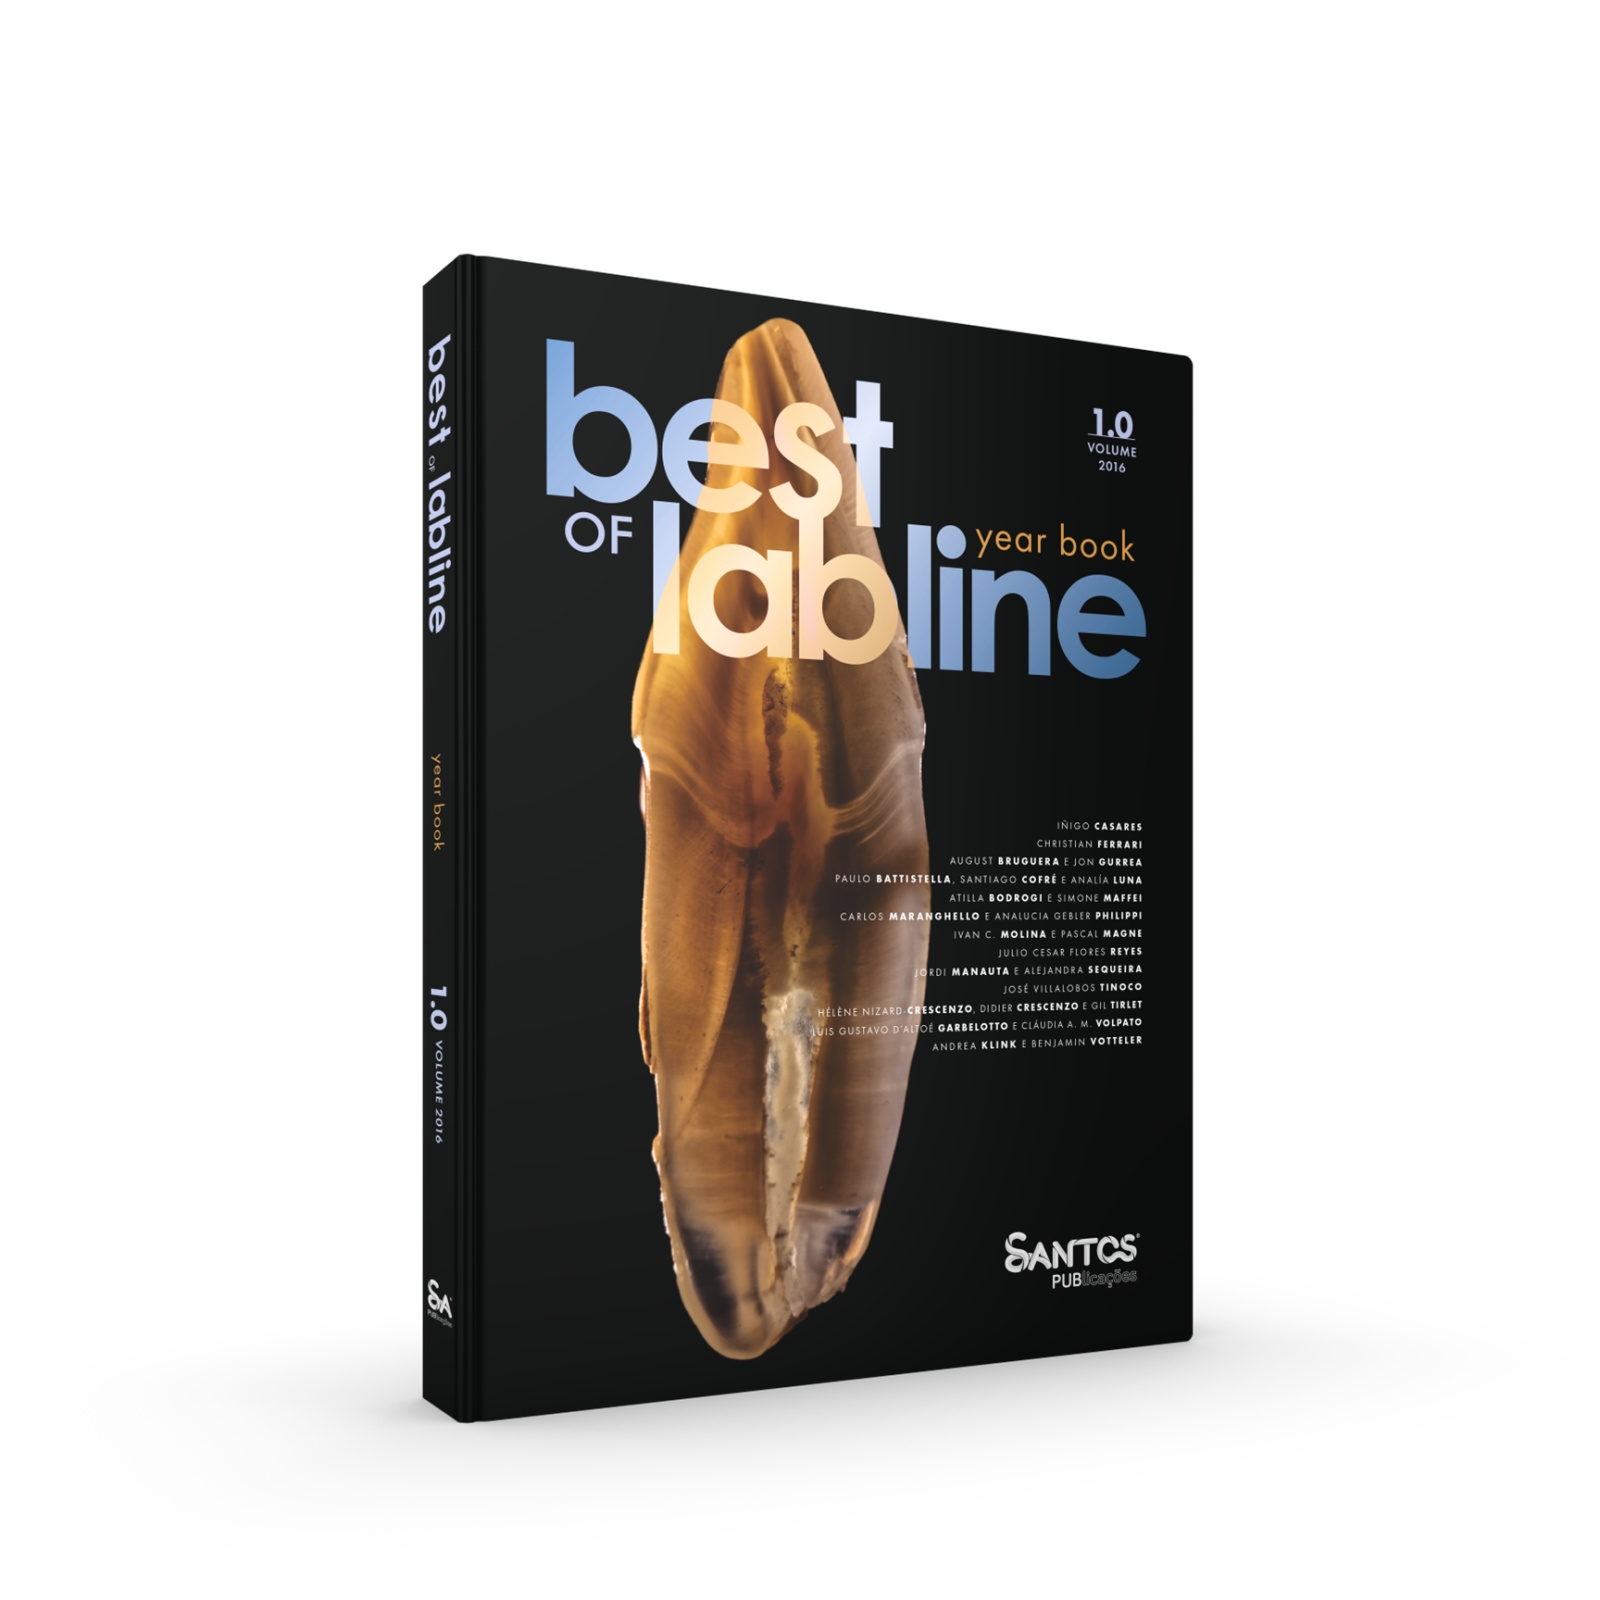 Best Of Labline - Yearbook 1.0